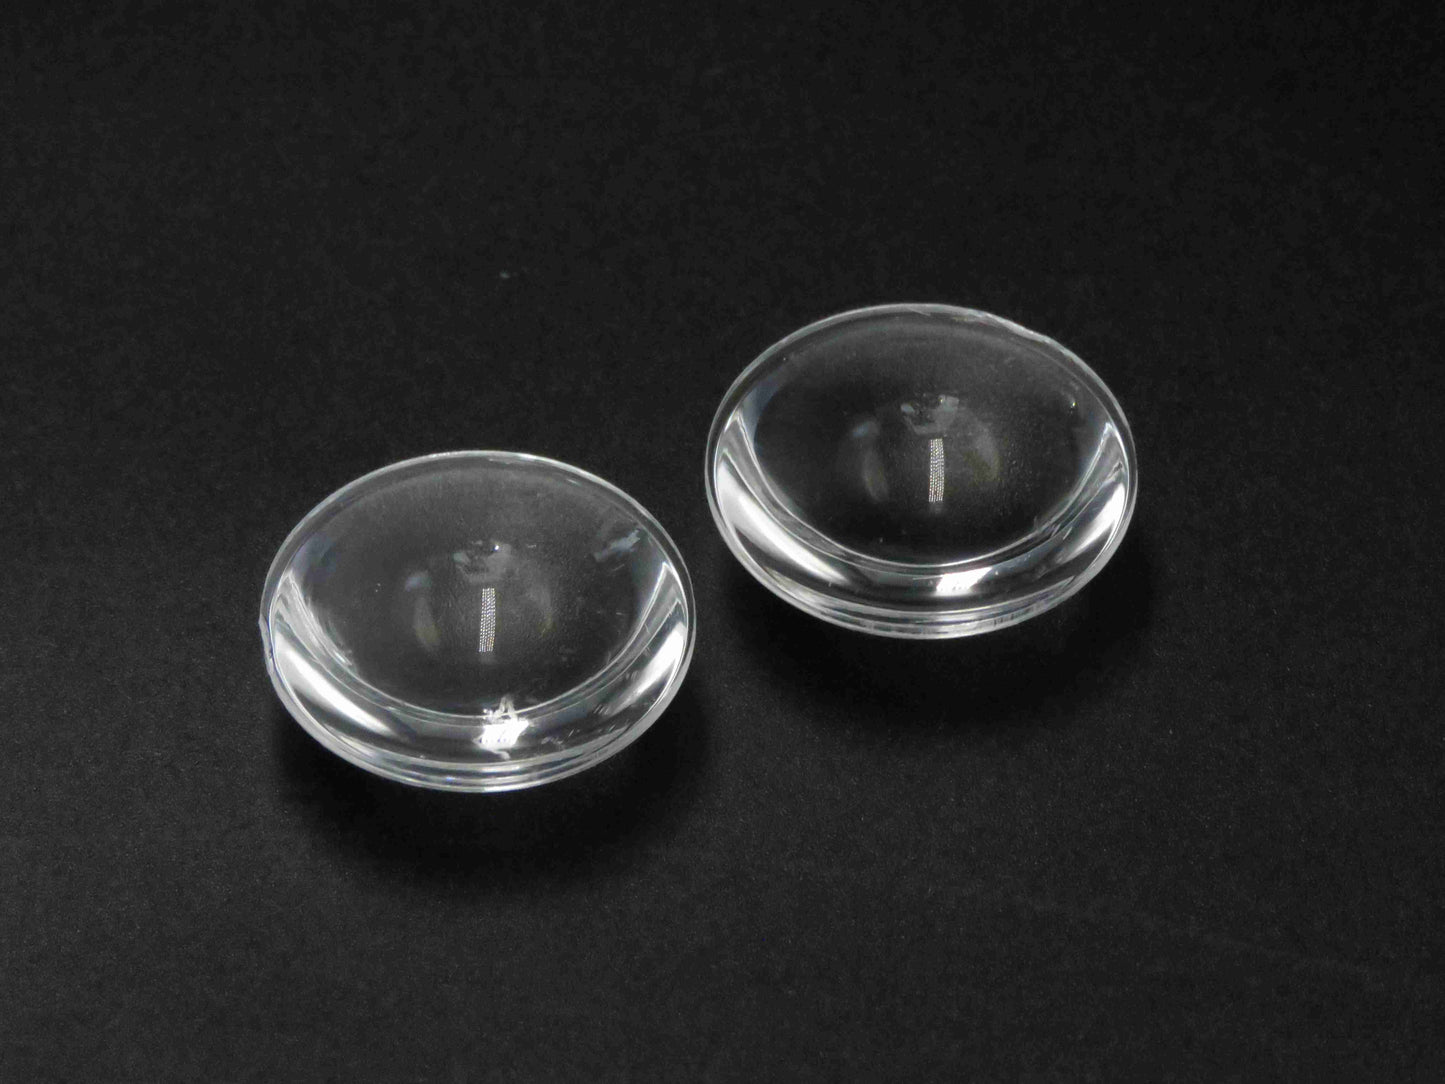 OEM/ODMカスタマイズされたプラスチック非球面レンズPMMA素材3DプロジェクションレンズVRレンズ